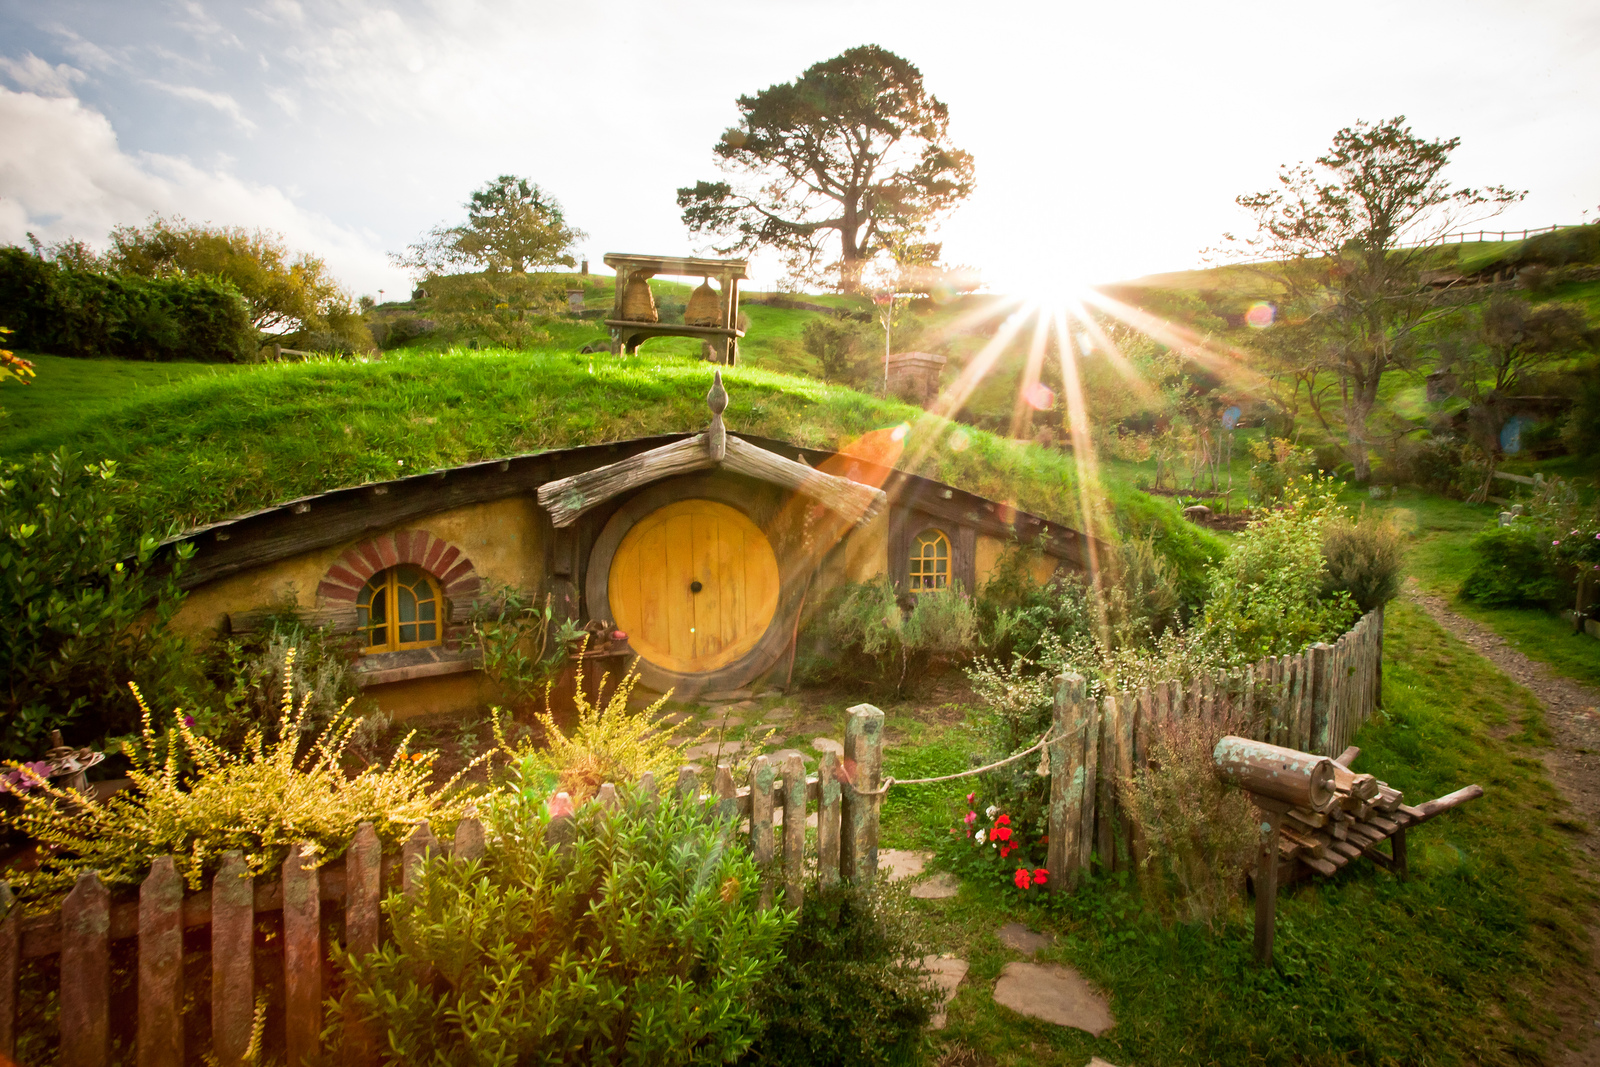 Trasforma l'appartamento in una casa Hobbit, il video fa il giro del web